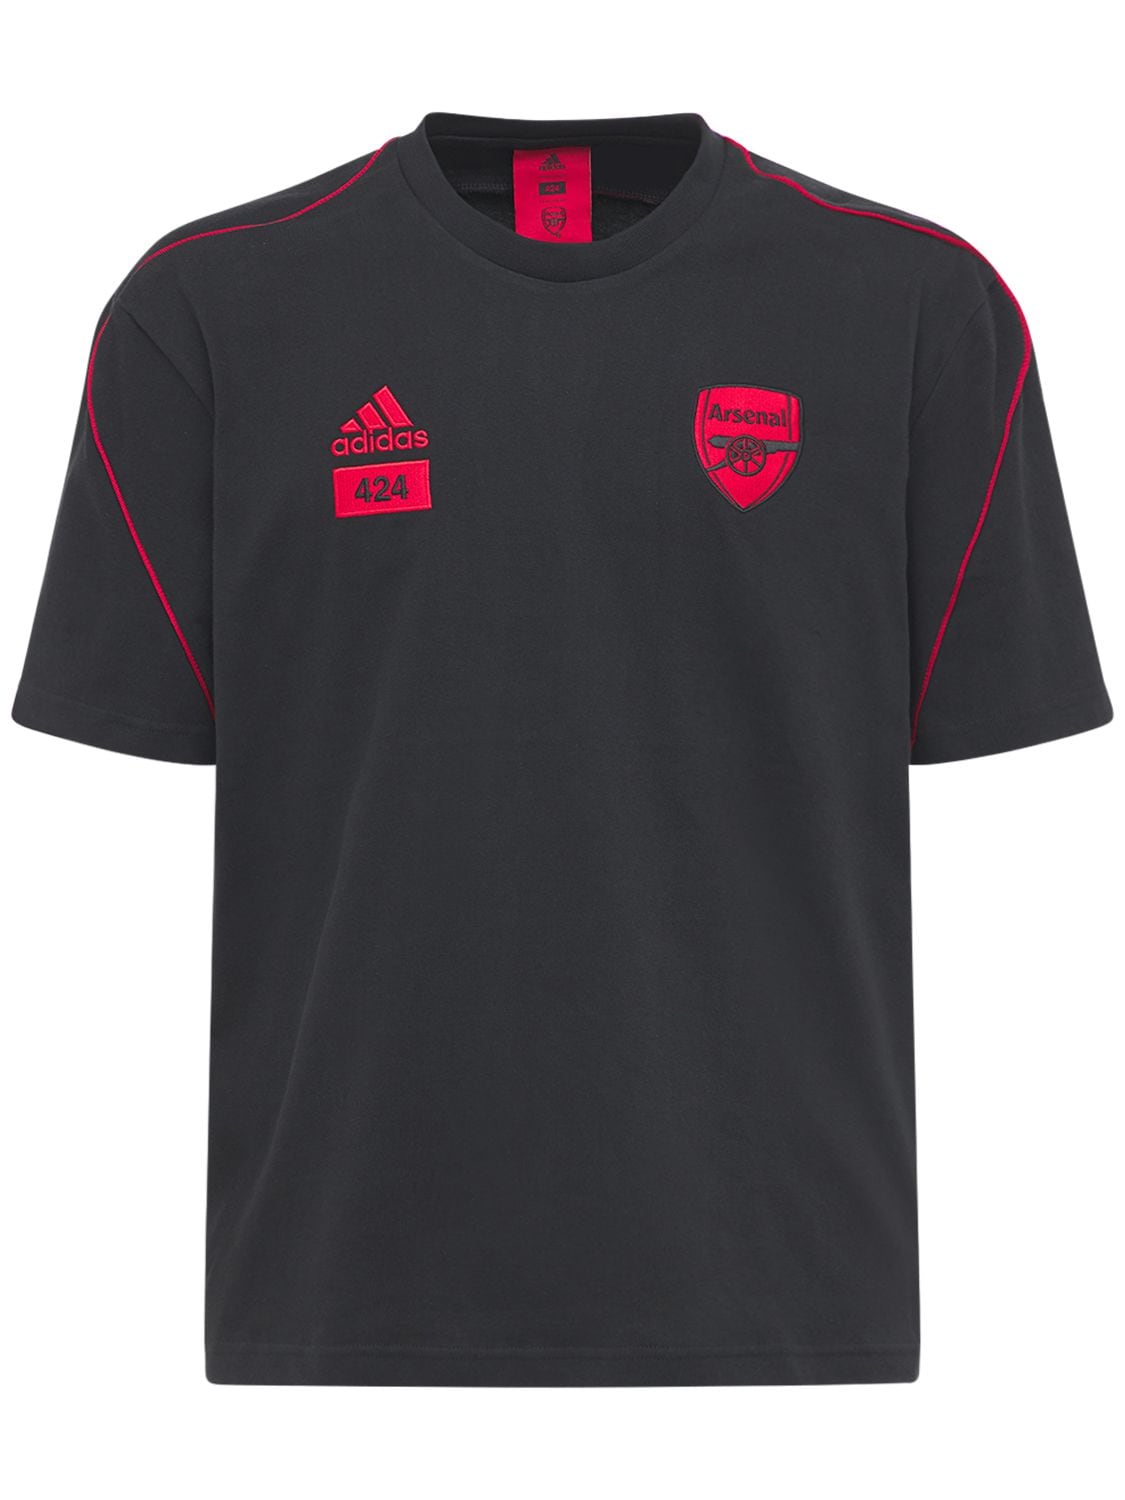 Adidas Originals Statement Afc X 424 T-shirt In Black